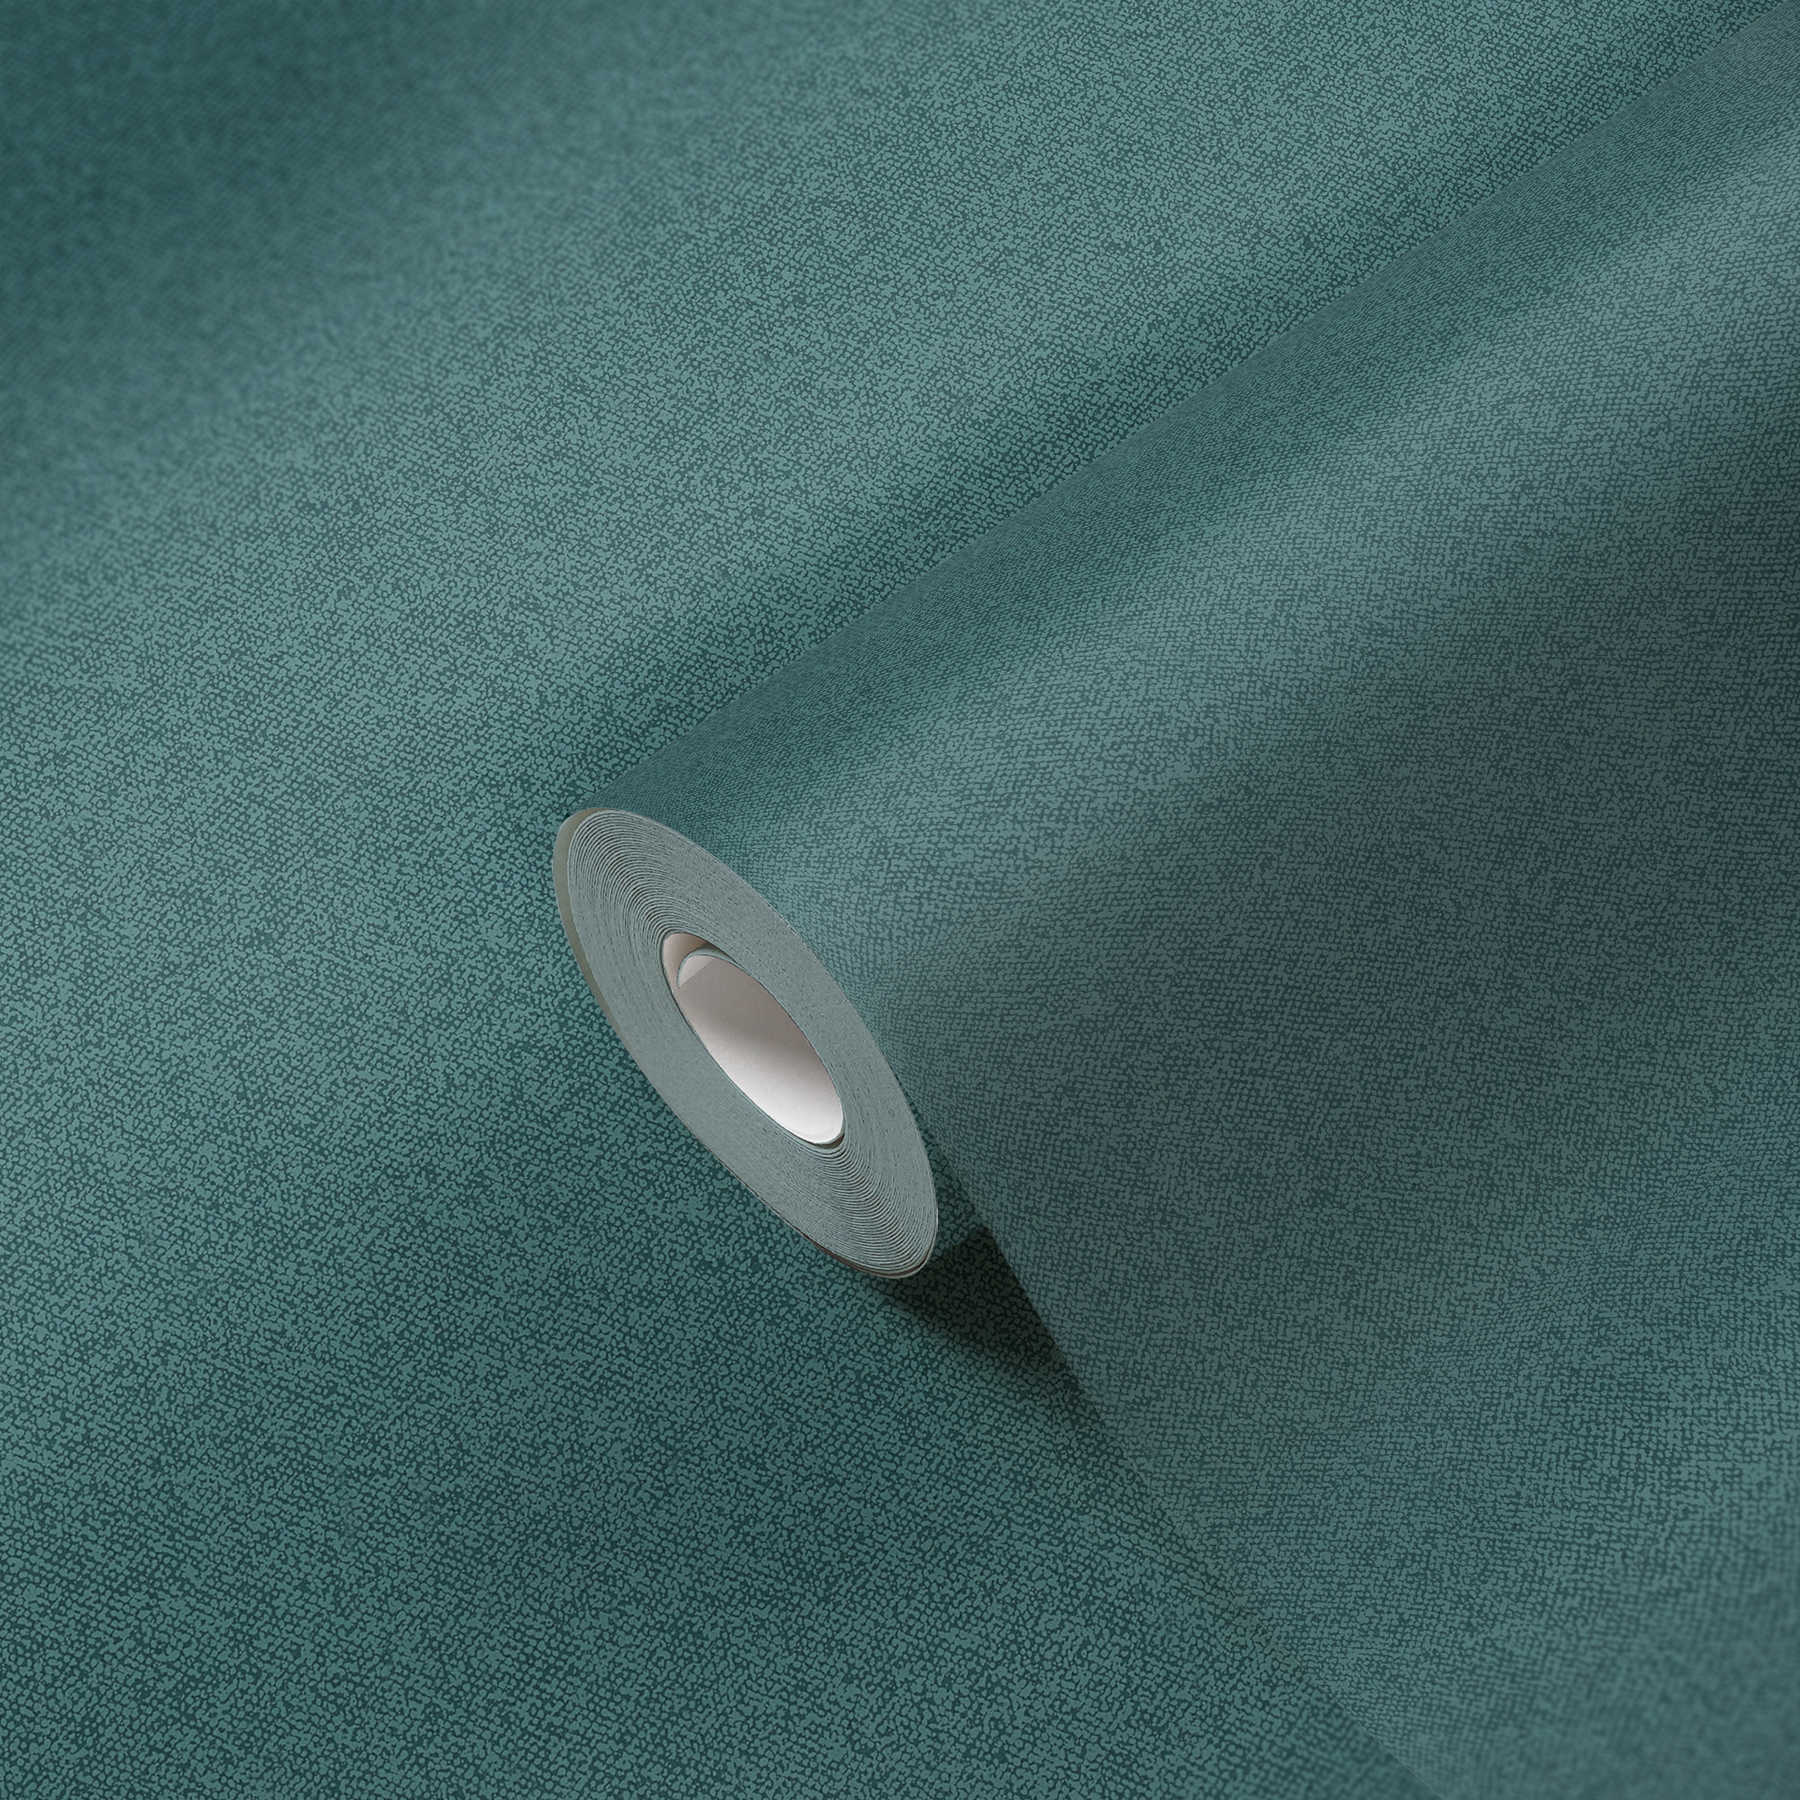             Uni Tapete mit Leinen-Optik, strukturiert – Grün, Blau
        